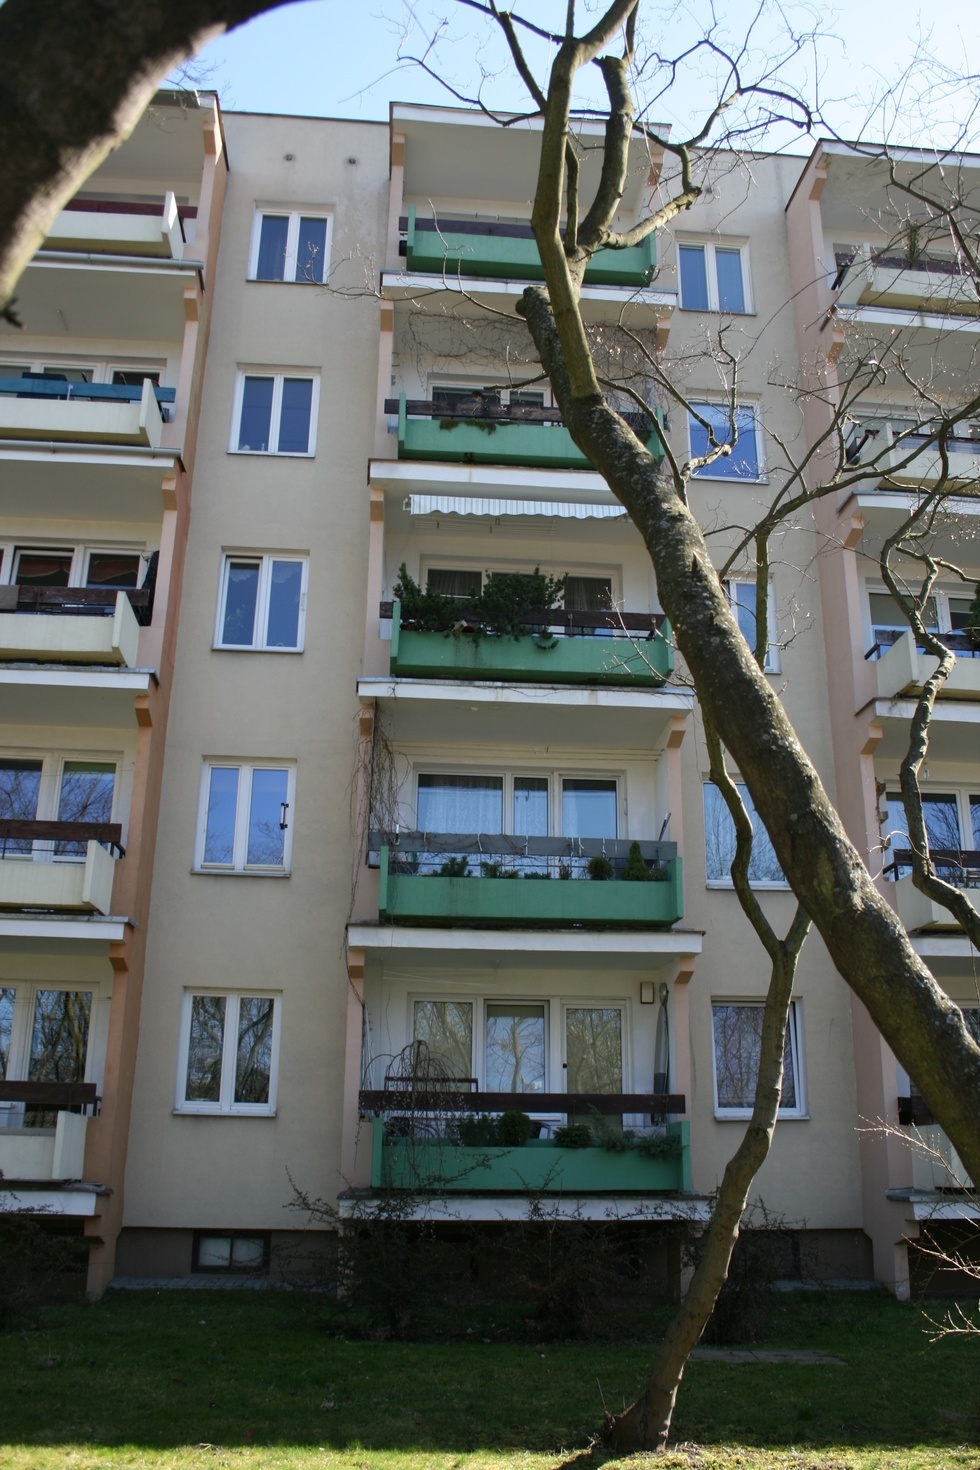  Ciała trzech osób w mieszkaniu przy ul. Lawinowej w Lublinie  - Autor: Paweł Buczkowski